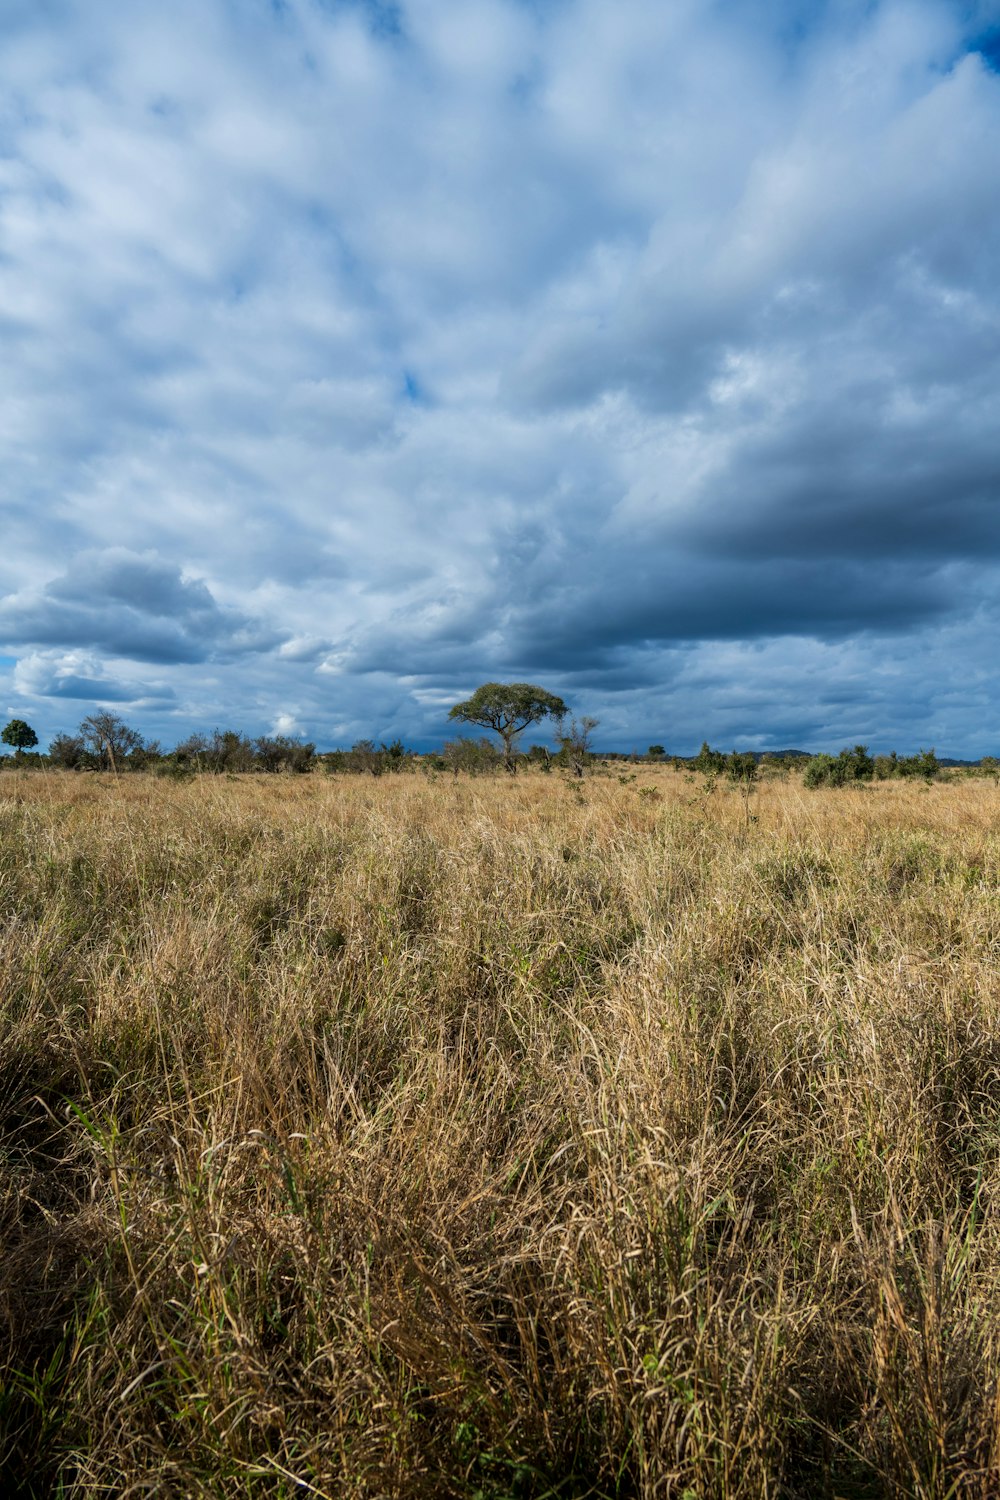 a field of grass under a cloudy blue sky